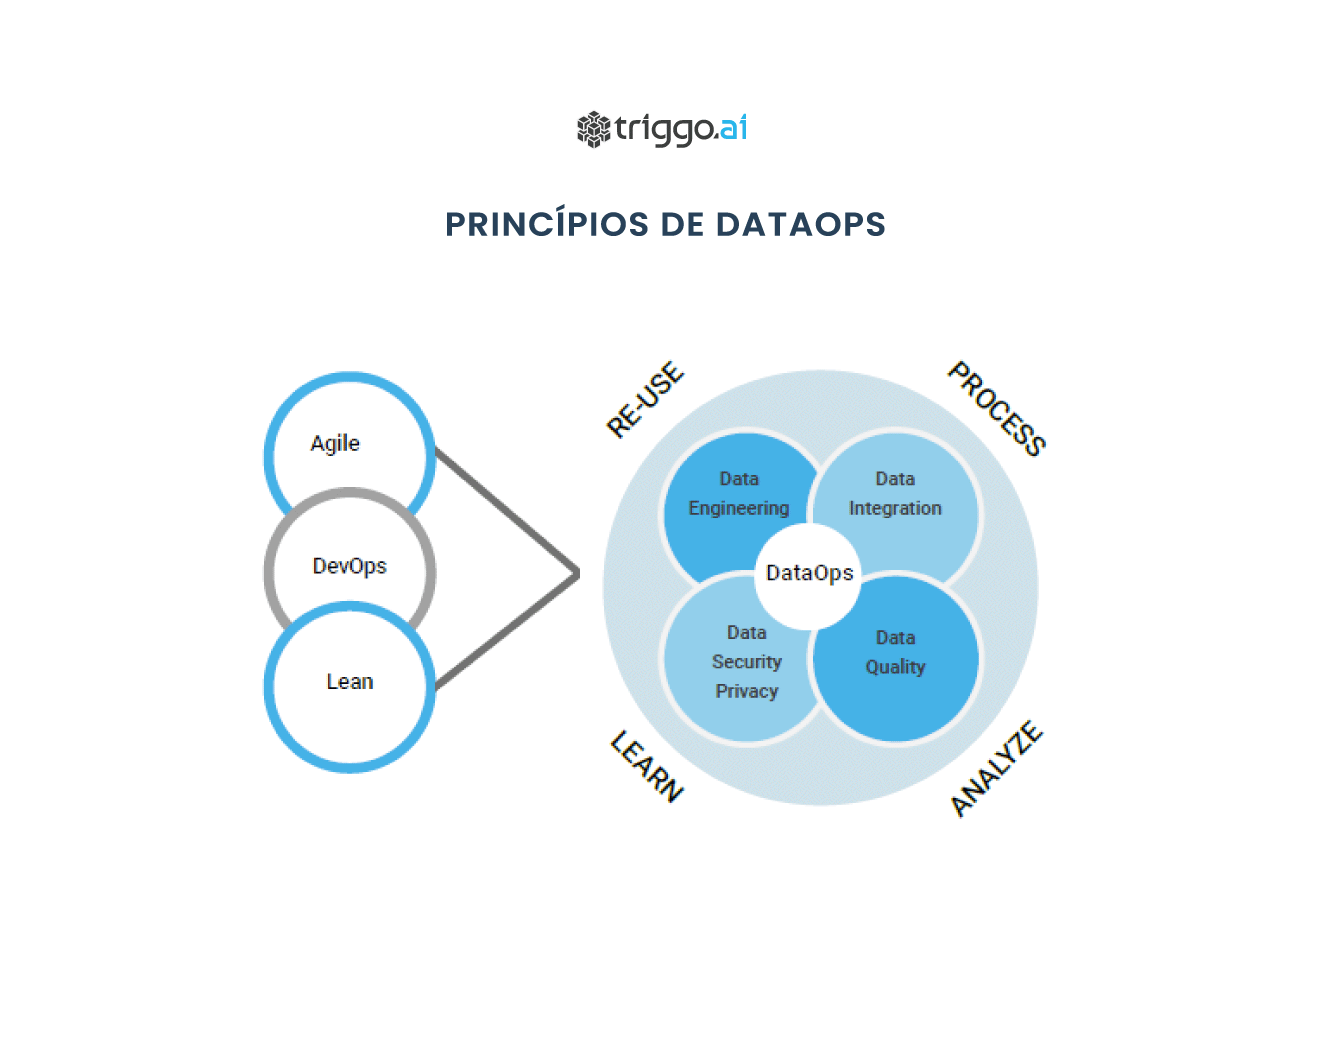 Os-Princípios-de-DataOps-triggo.ai